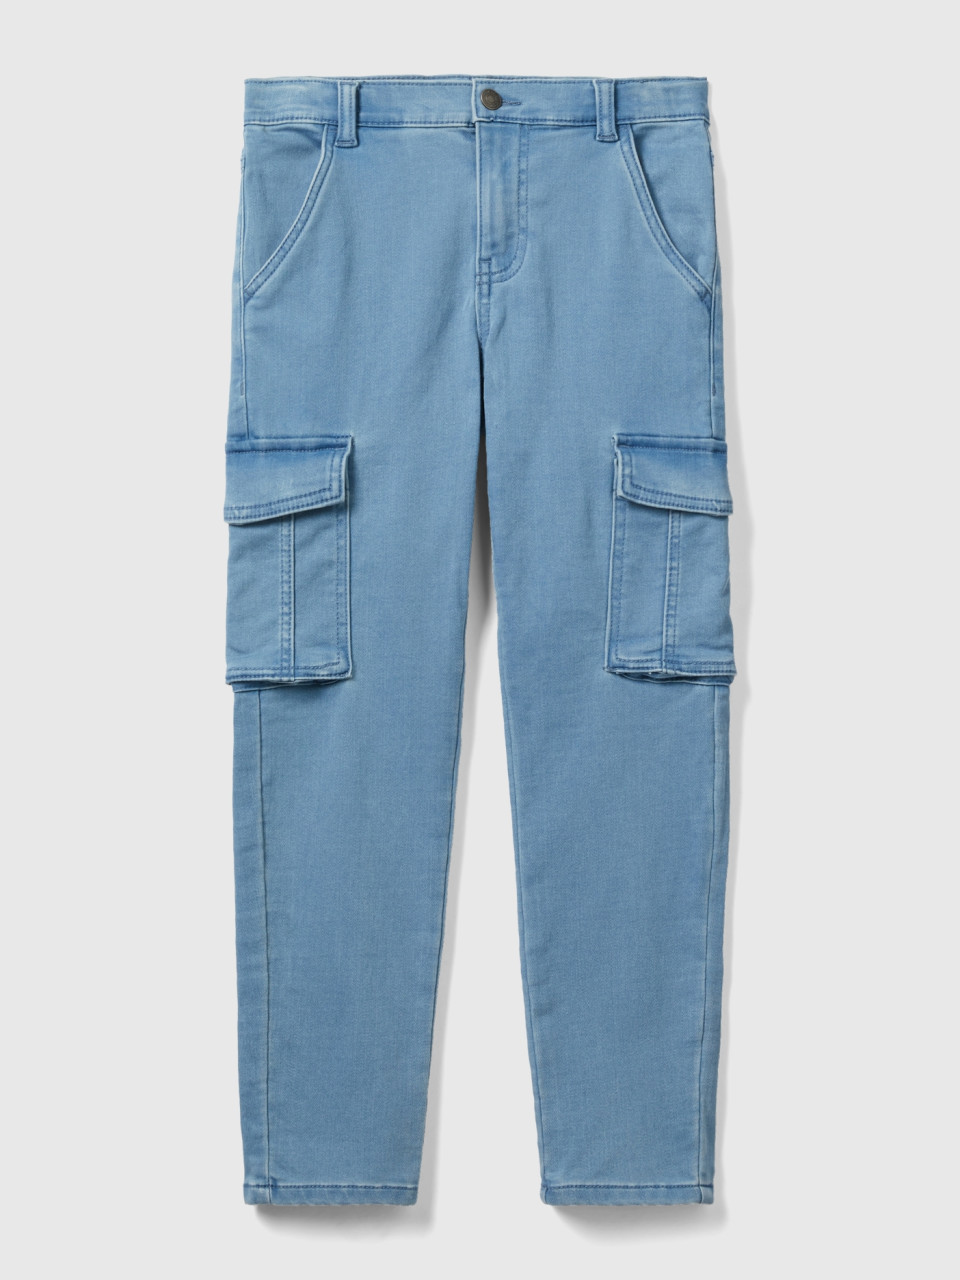 Benetton, Slim Fit Jeans Mit Großen Taschen, Azurblau, male